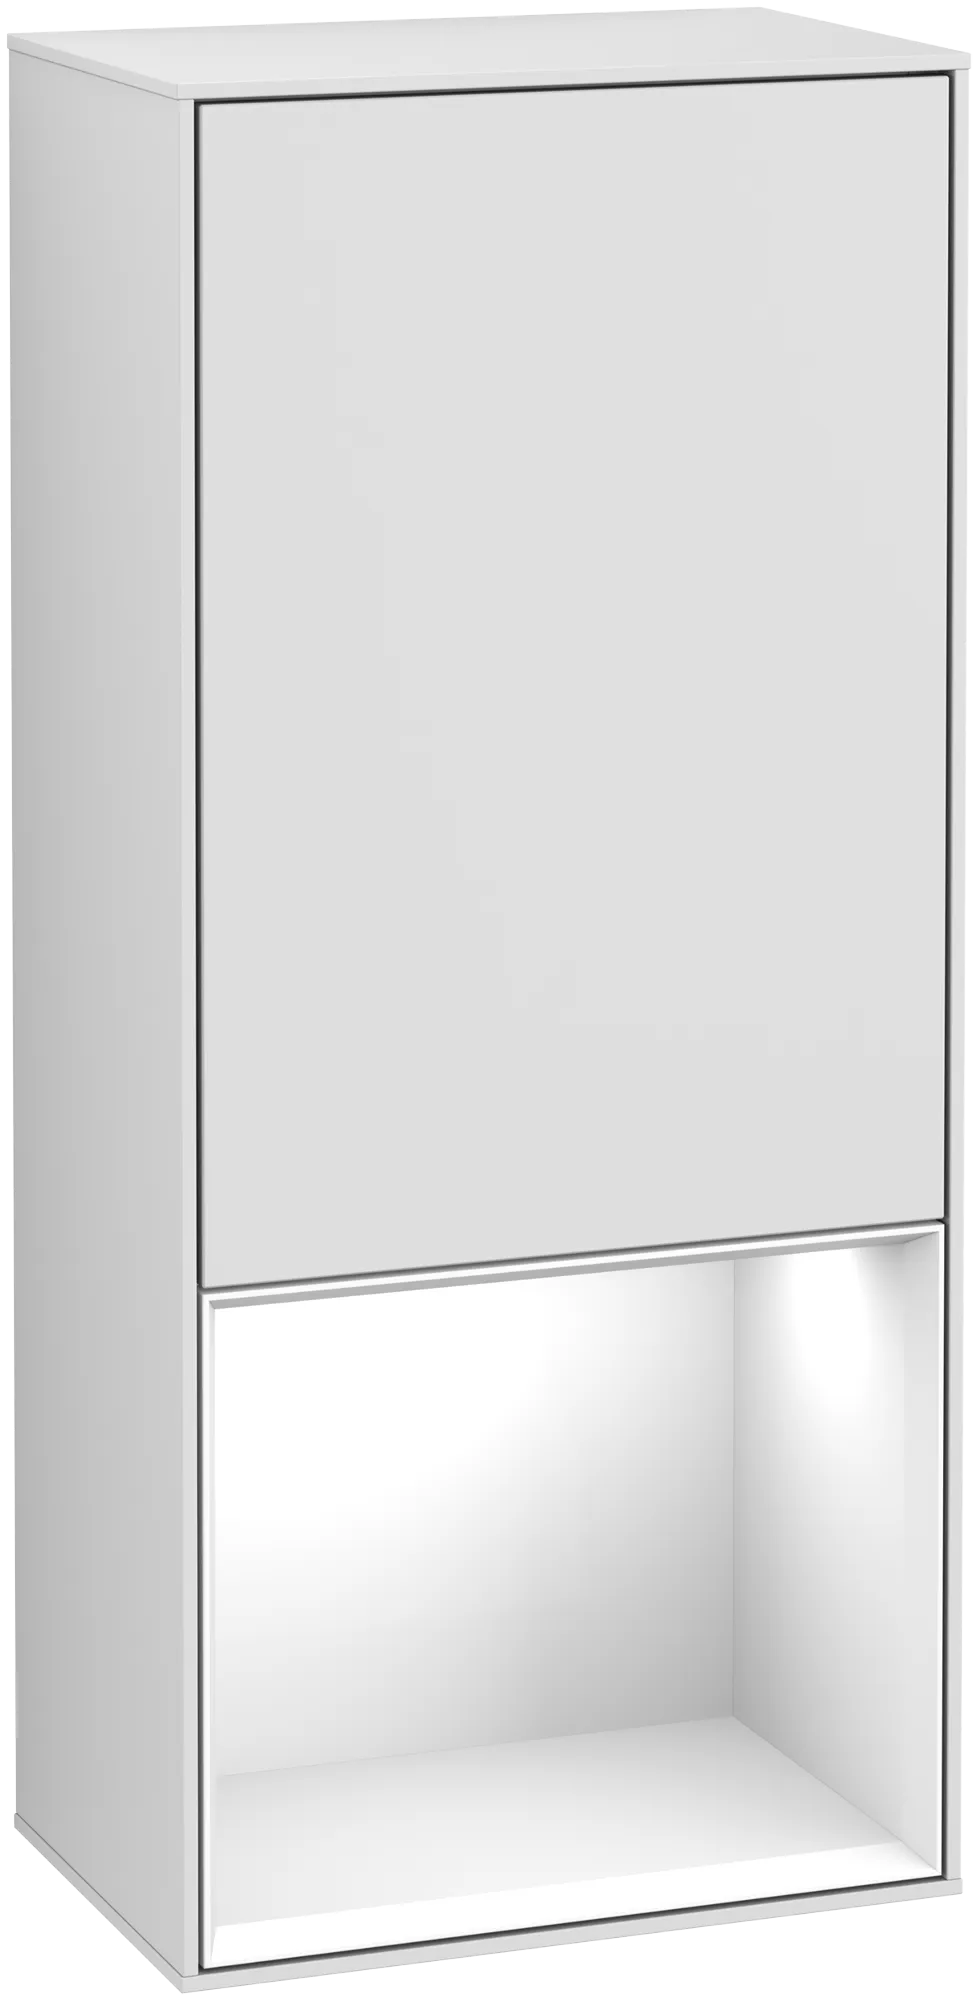 Bild von VILLEROY BOCH Finion Seitenschrank, mit Beleuchtung, 1 Tür, 418 x 936 x 270 mm, White Matt Lacquer / Glossy White Lacquer #G540GFMT